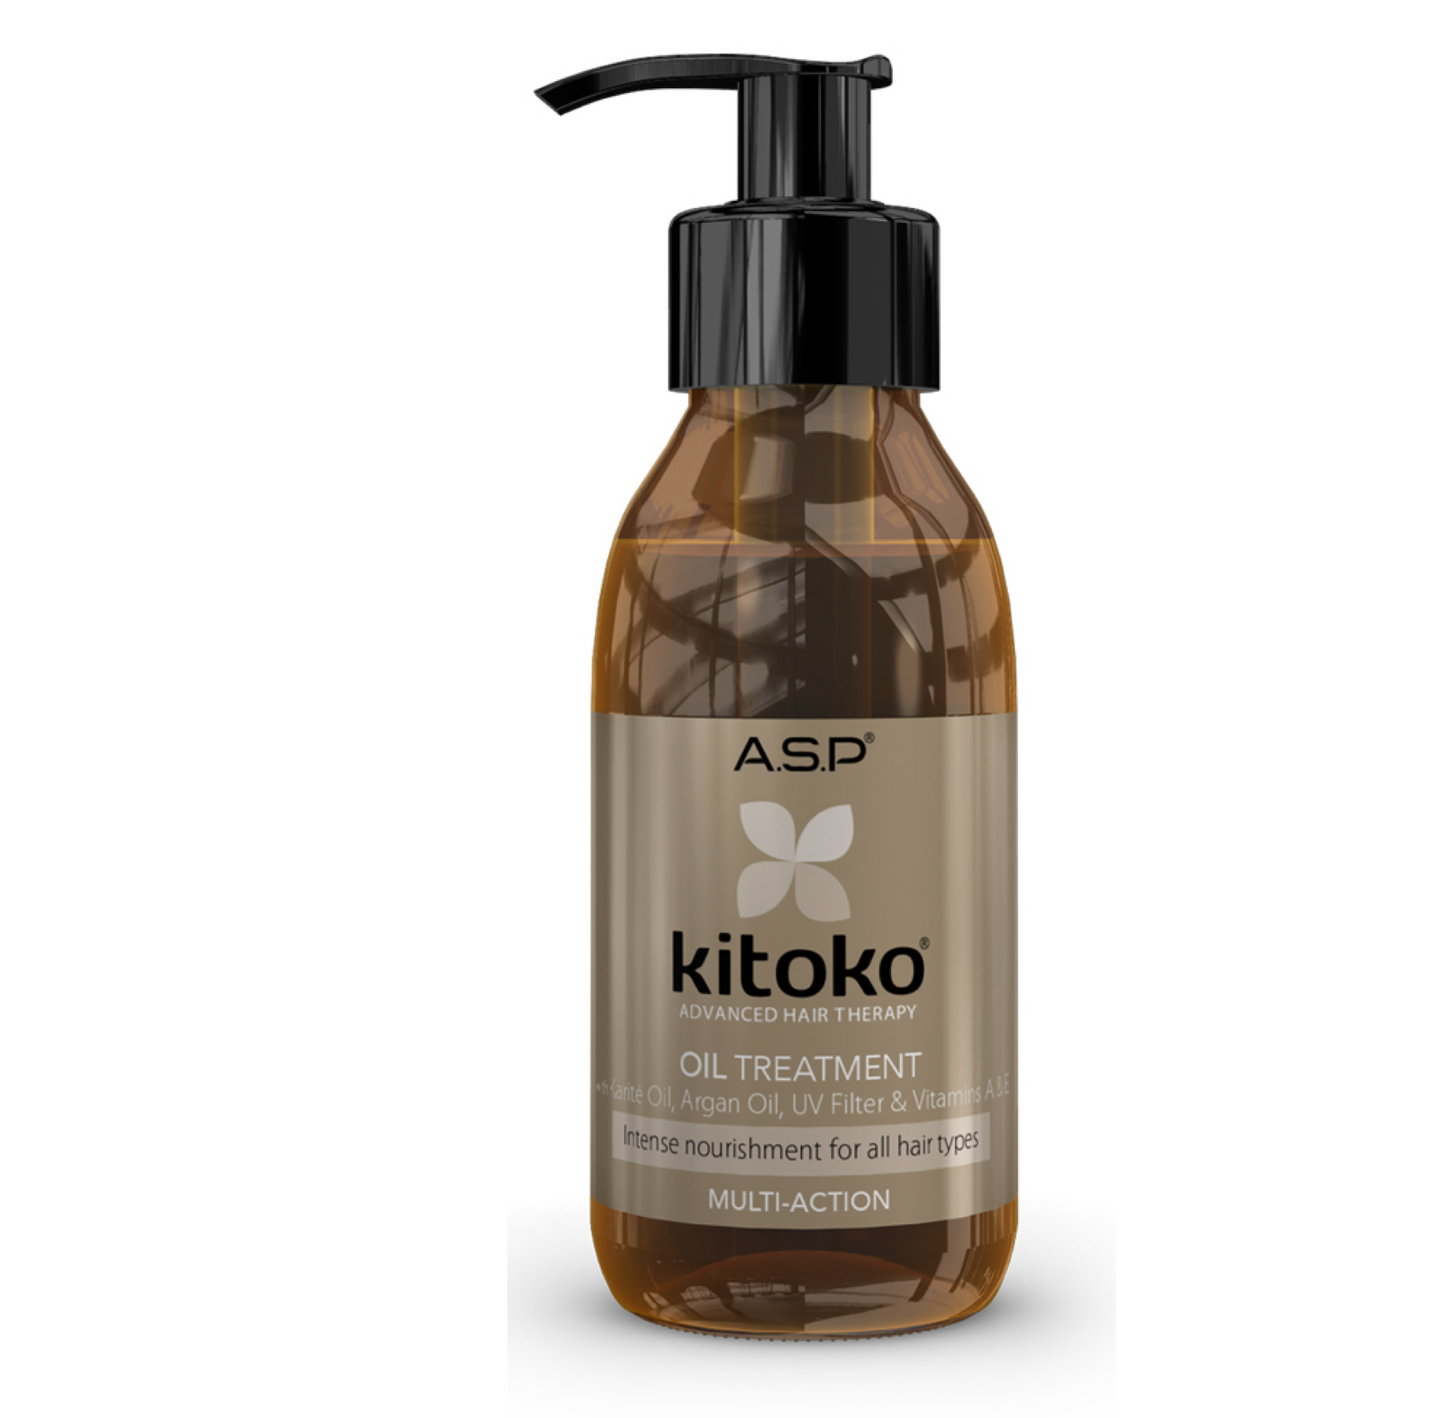 ASP Kitoko Oil Treatment 115ml